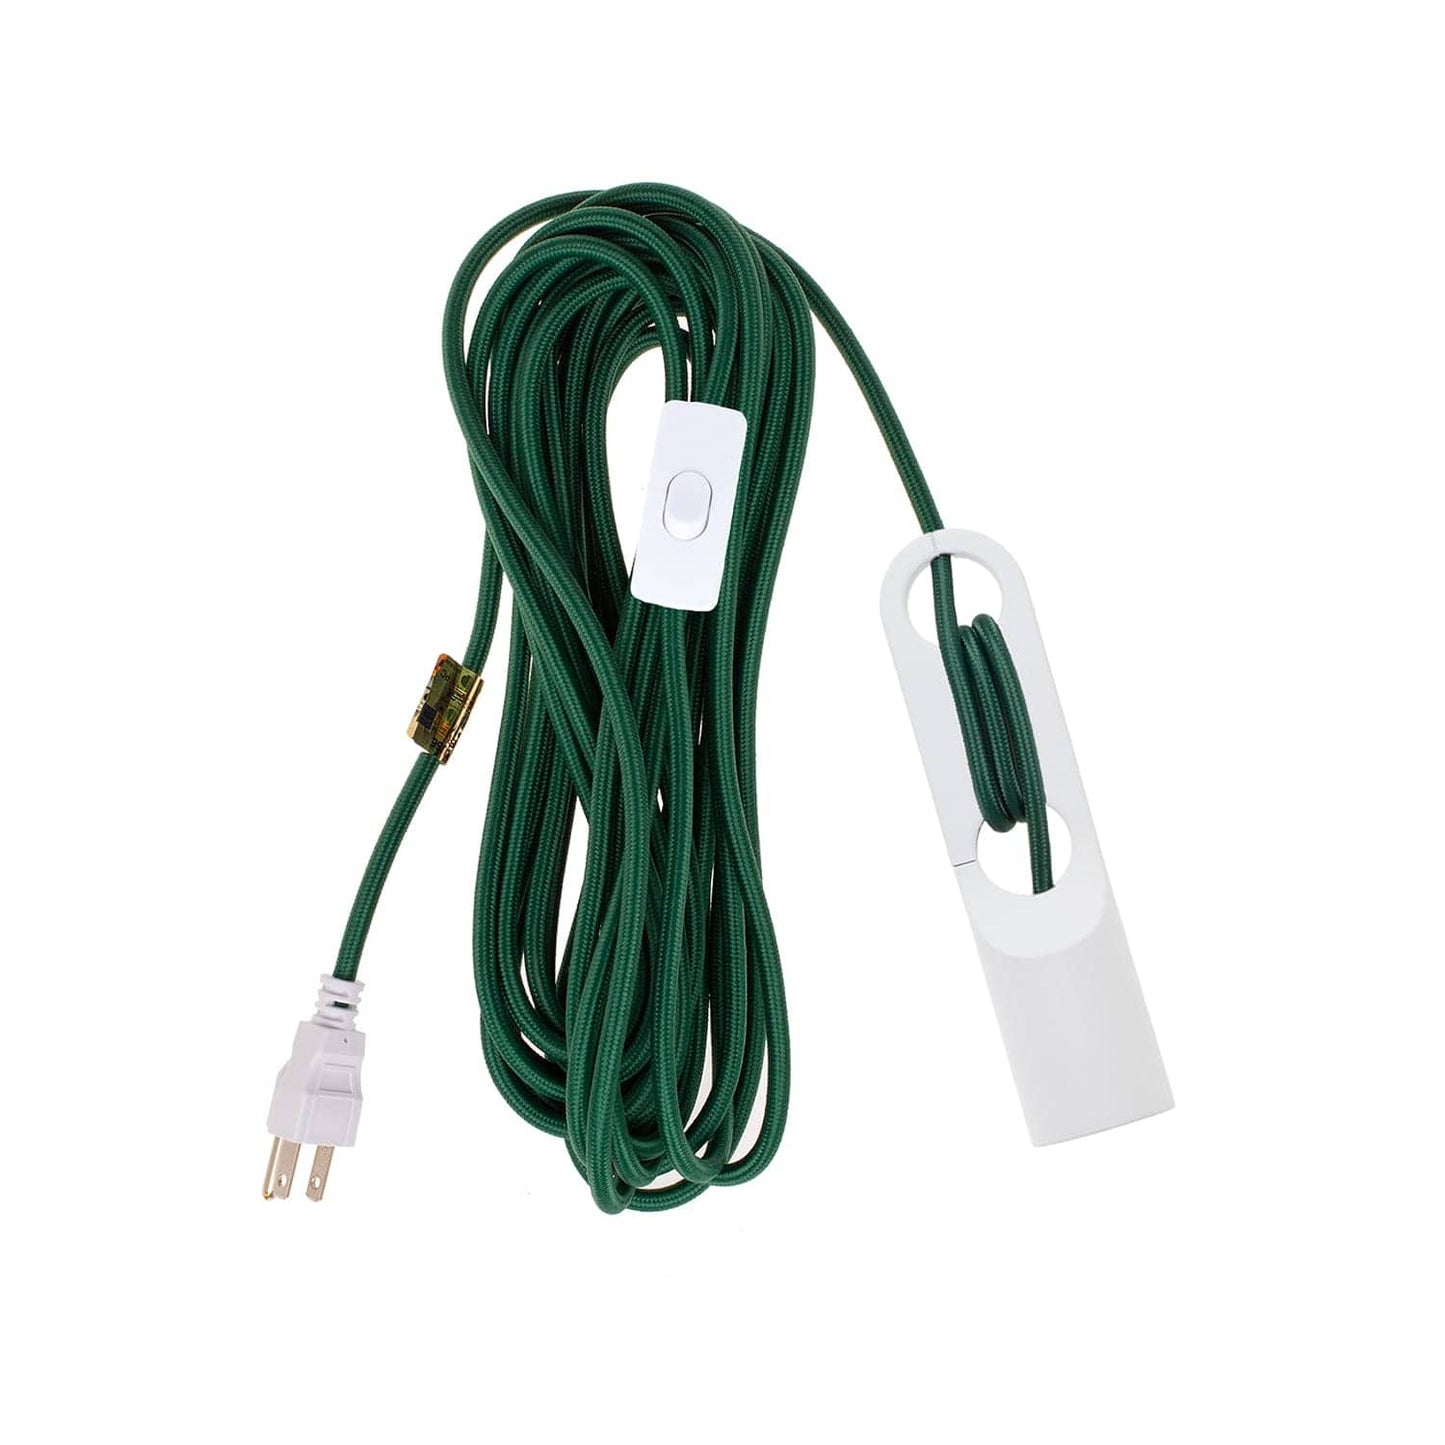 Wrap White Chroma Plug-In Cord Set